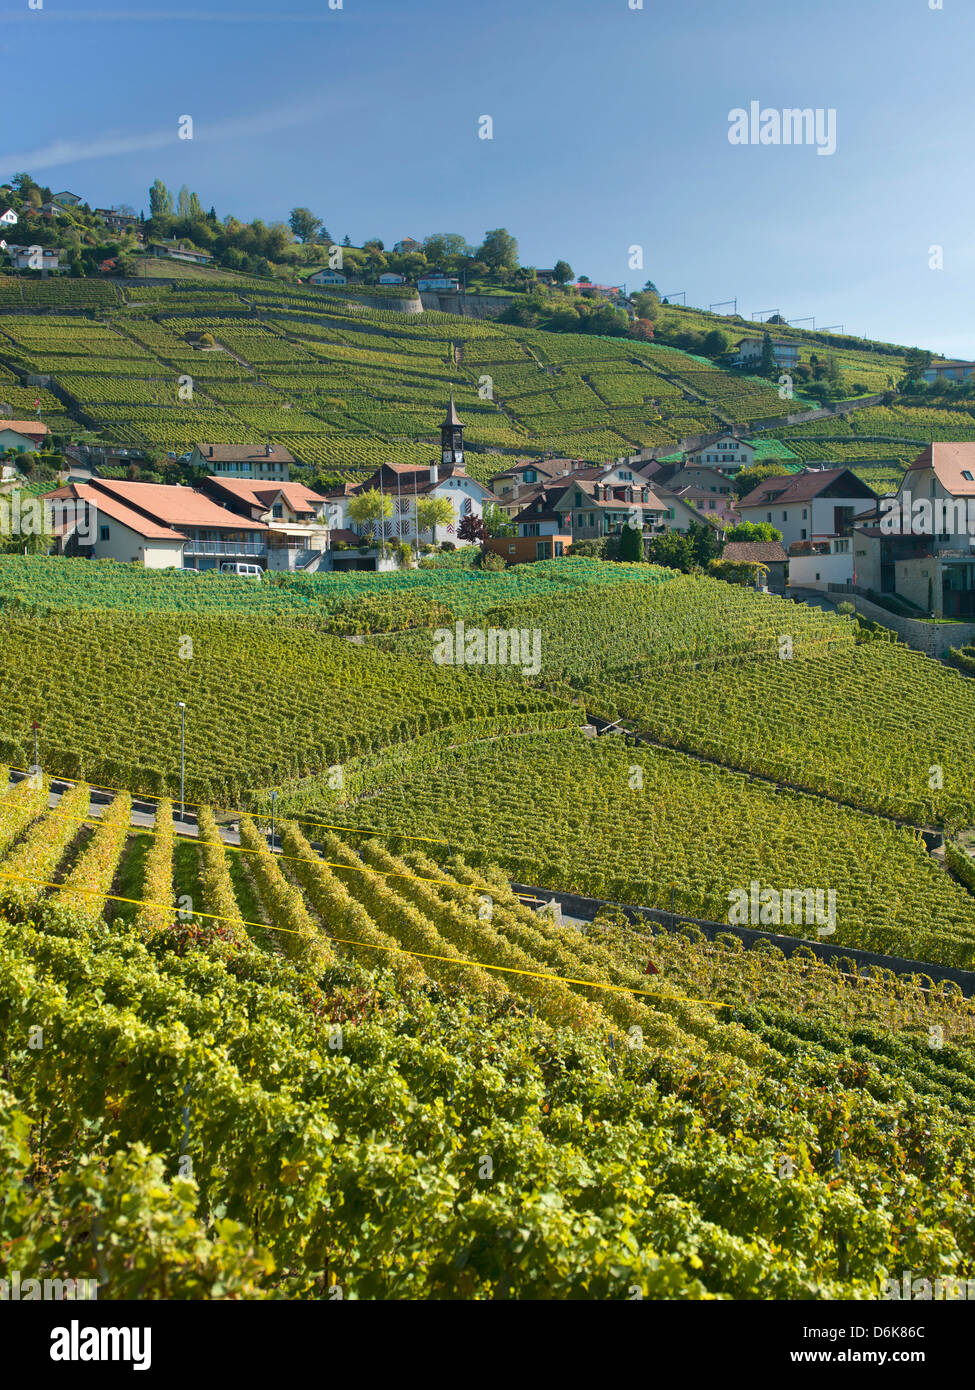 Lavaux, vignobles en terrasses sur le lac de Genève, Montreux, Canton de Vaud, Suisse, Europe Banque D'Images